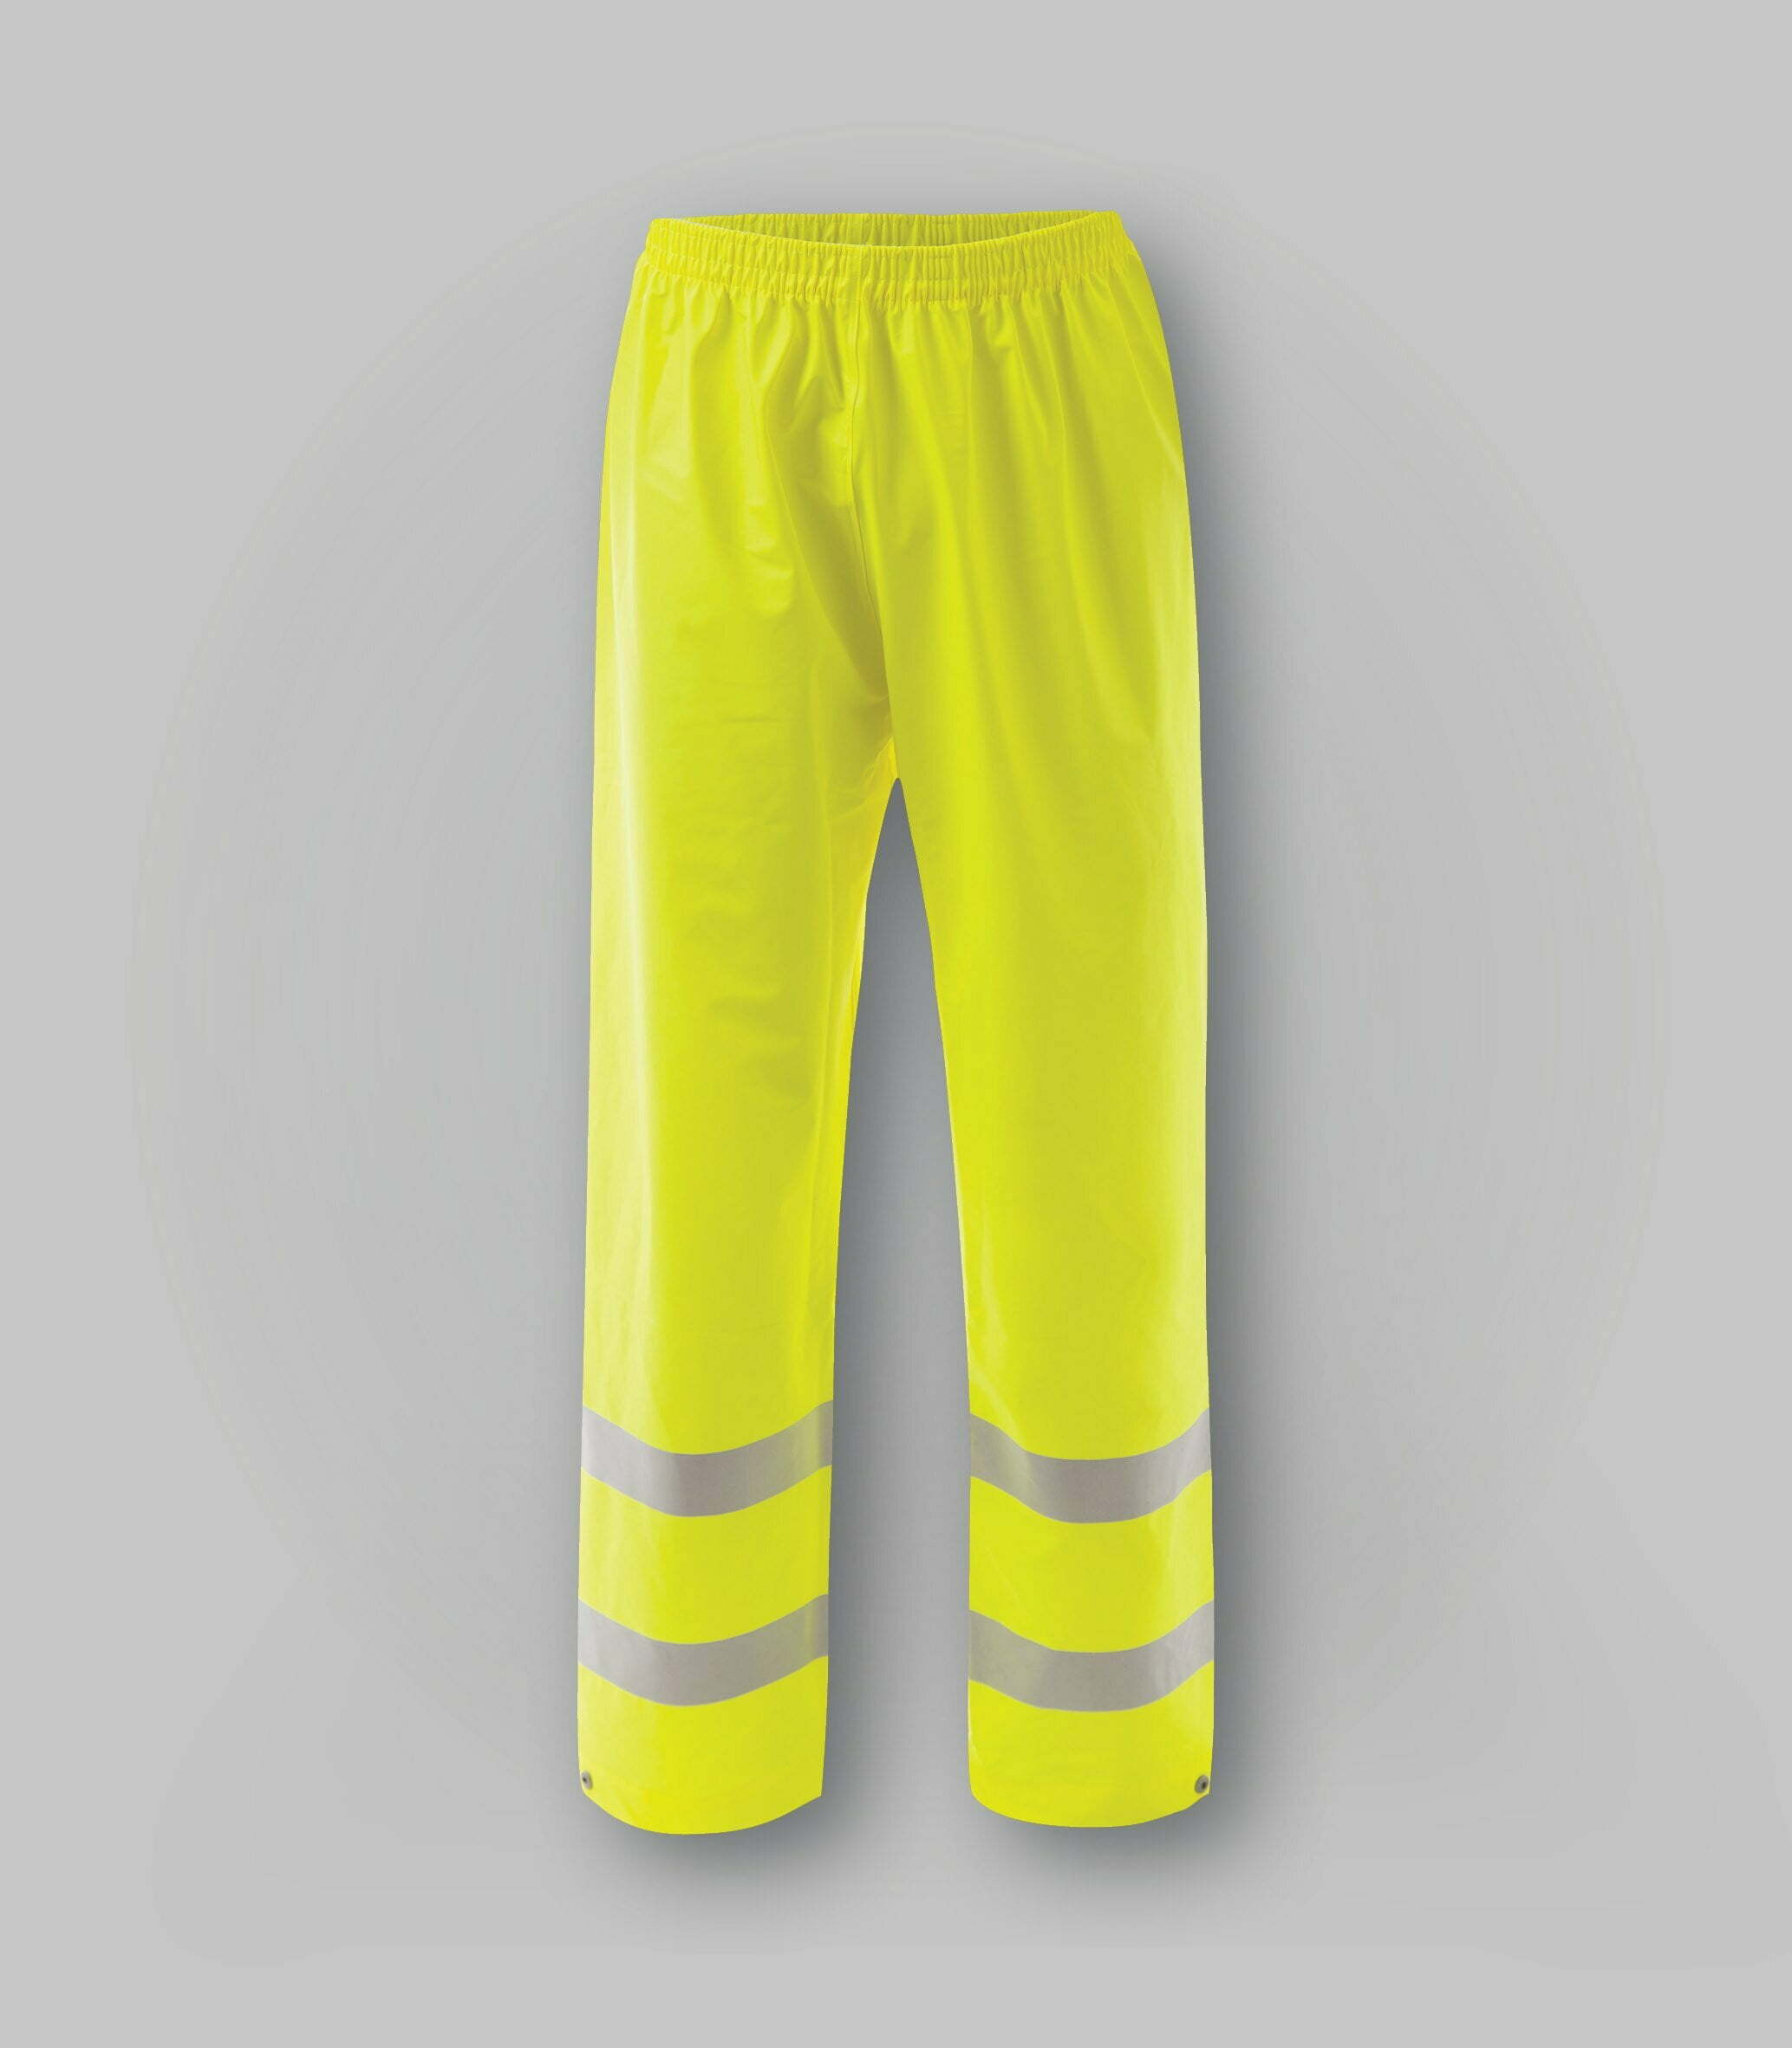 Pantaloni impermeabili, ignifughi ad alta visibilità-abbigliamentocertificato.com